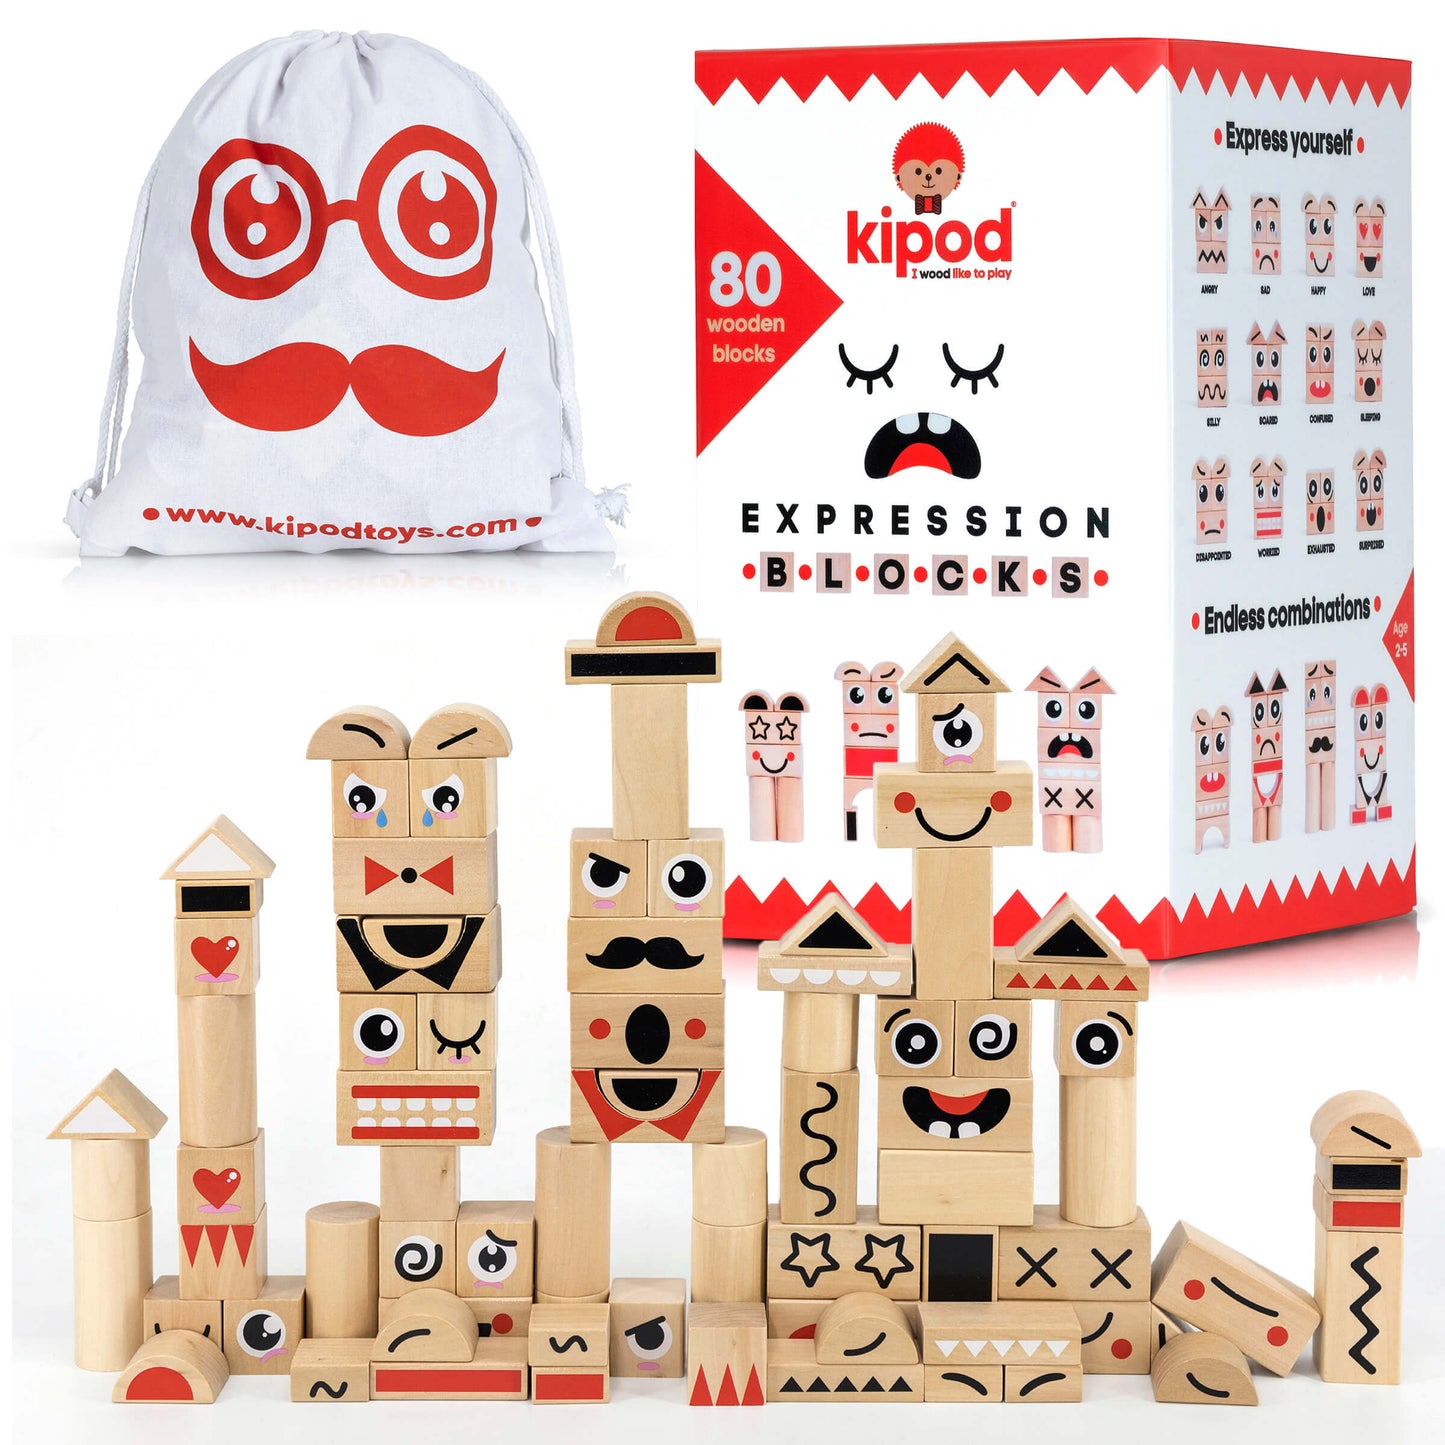 Kipod - Expression wooden blocks